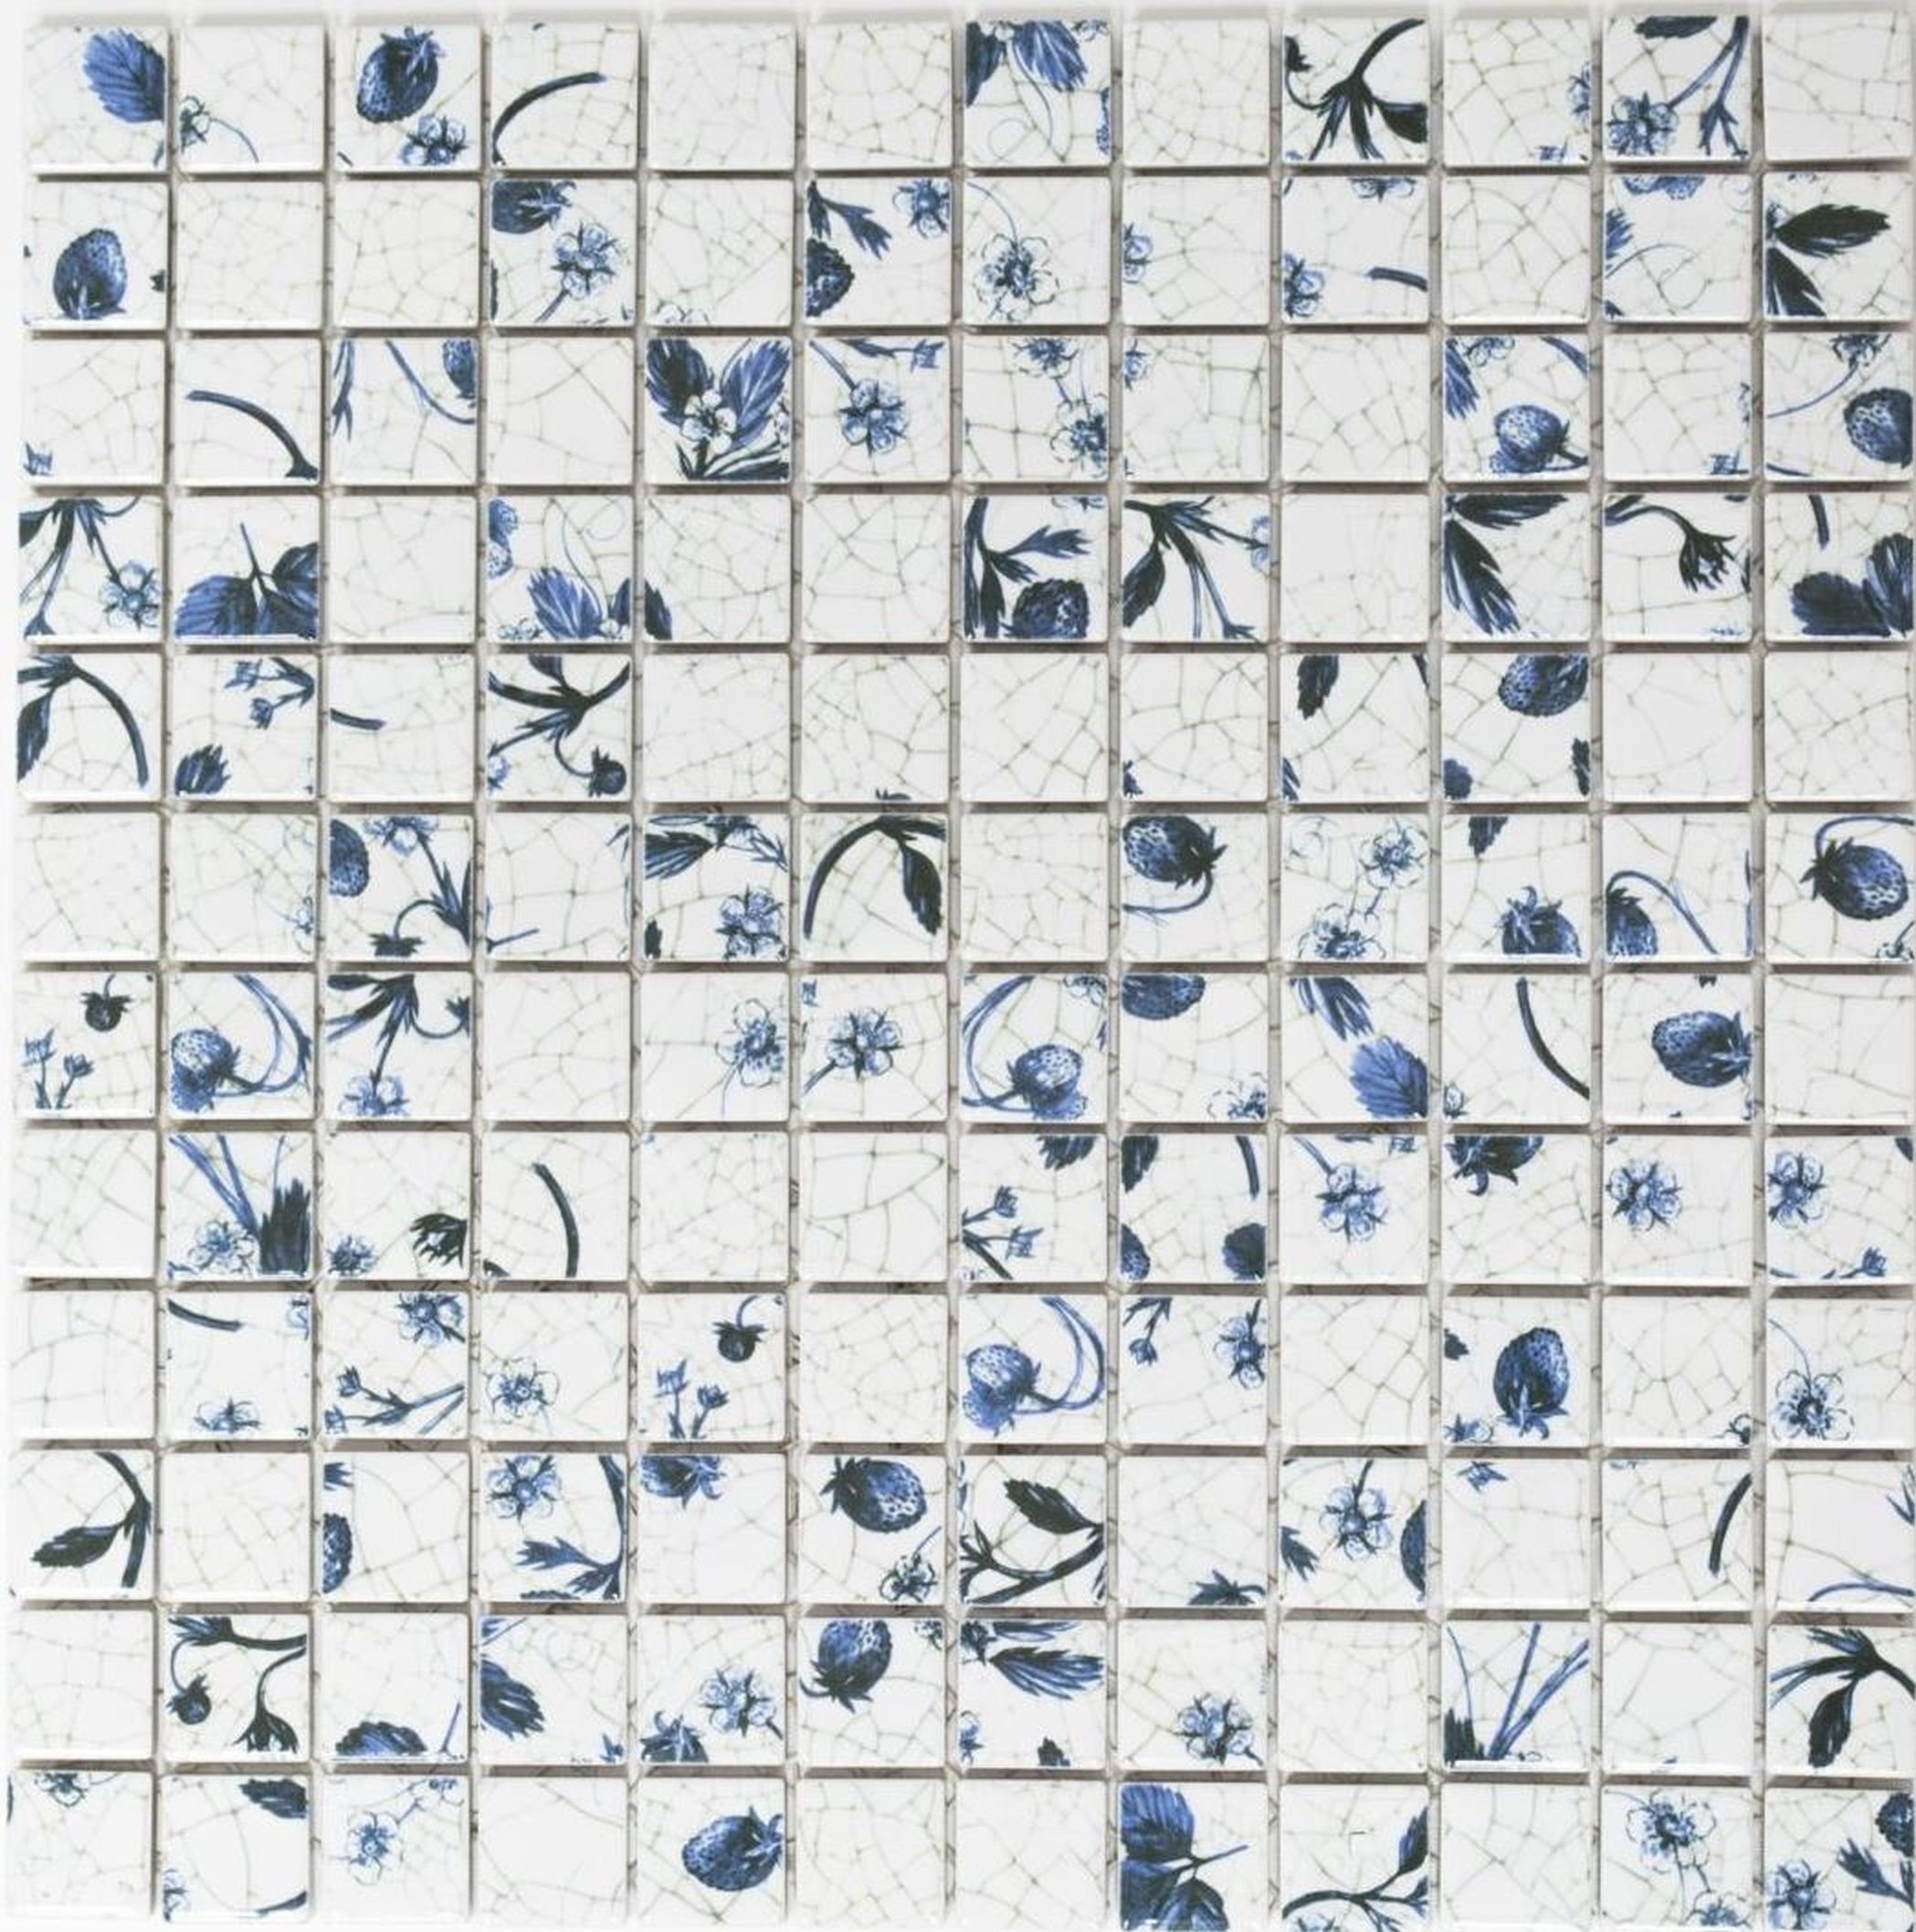 Küche Mosaikfliesen Mosaikfliese Retro Mosaik Mosani Vintage Keramik Blume weiß blaue